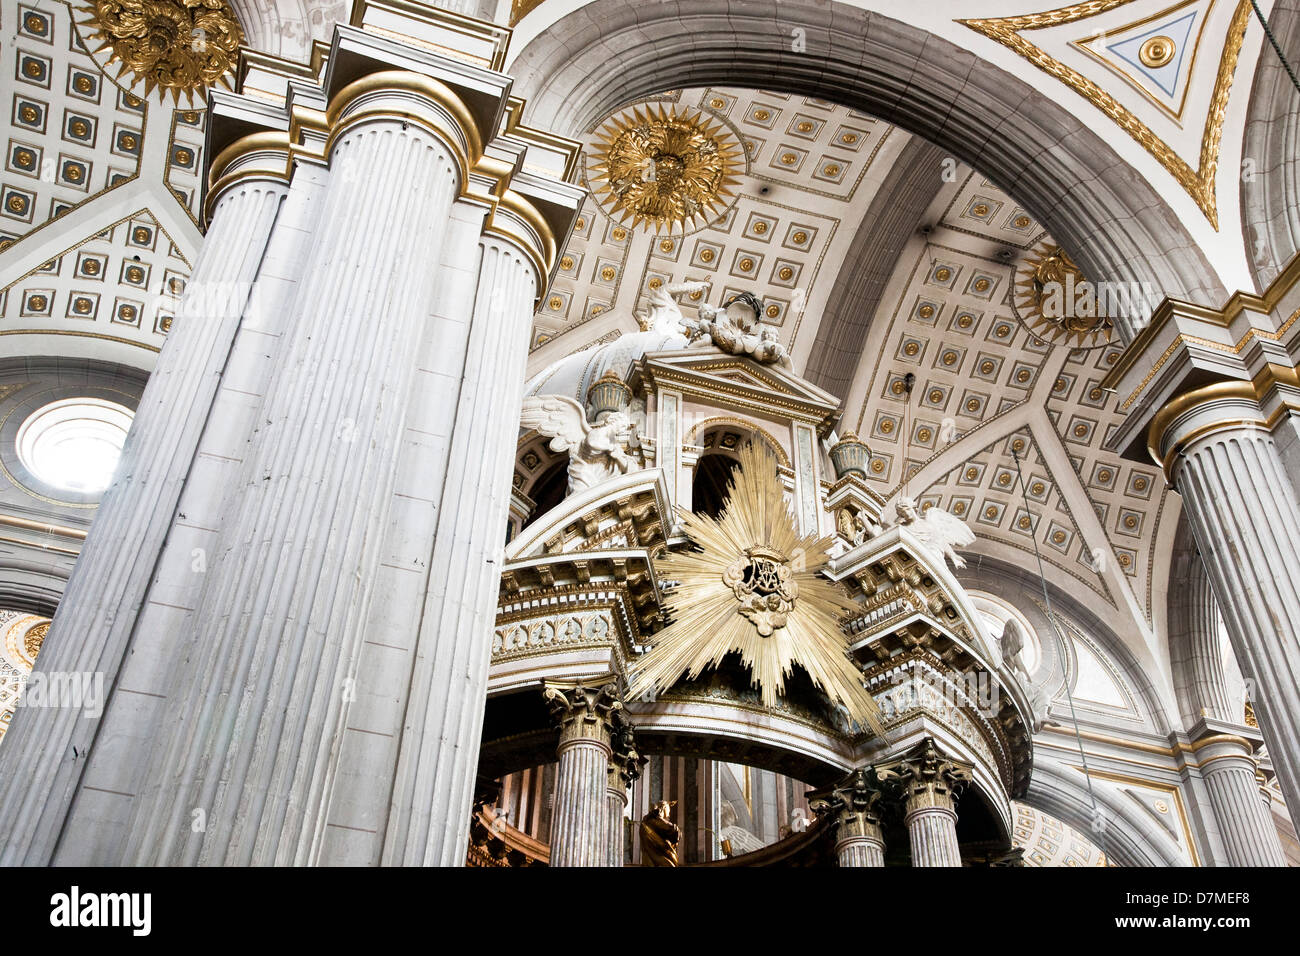 Colonnes et voûtes au plafond avec dorures Rococo magnifique baldaquin ci-dessus plus de modifier octogonale Cathédrale de Puebla Mexique Banque D'Images